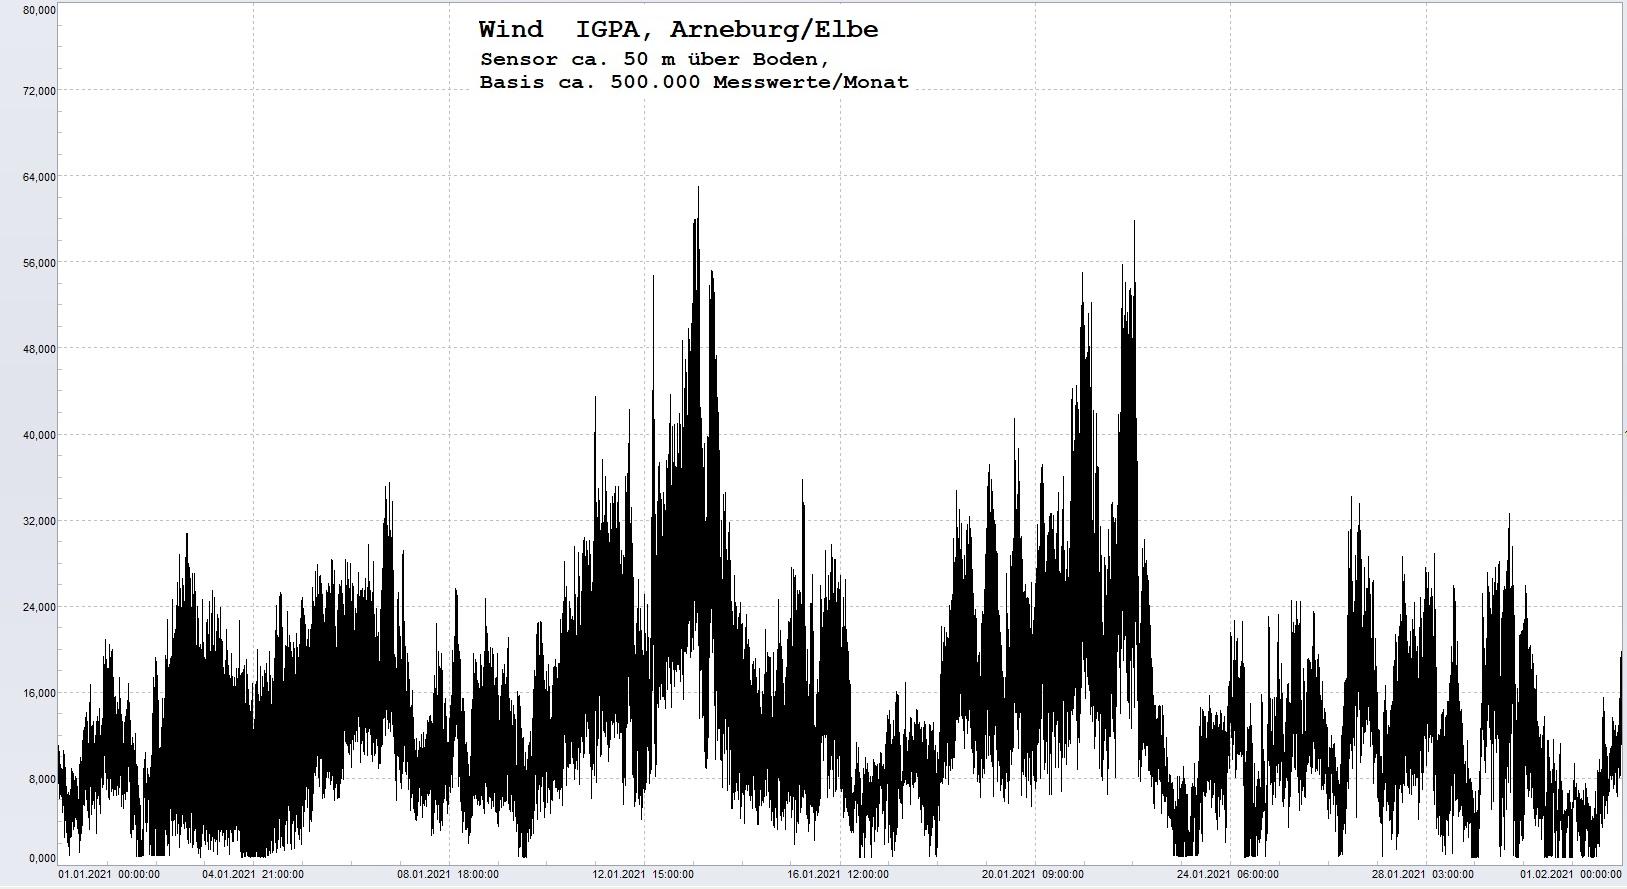 Arneburg Histogramm Winddaten Monat Januar 2021, 
  Sensor auf Gebäude, ca. 50 m über Erdboden, Basis: 5s-Aufzeichnung